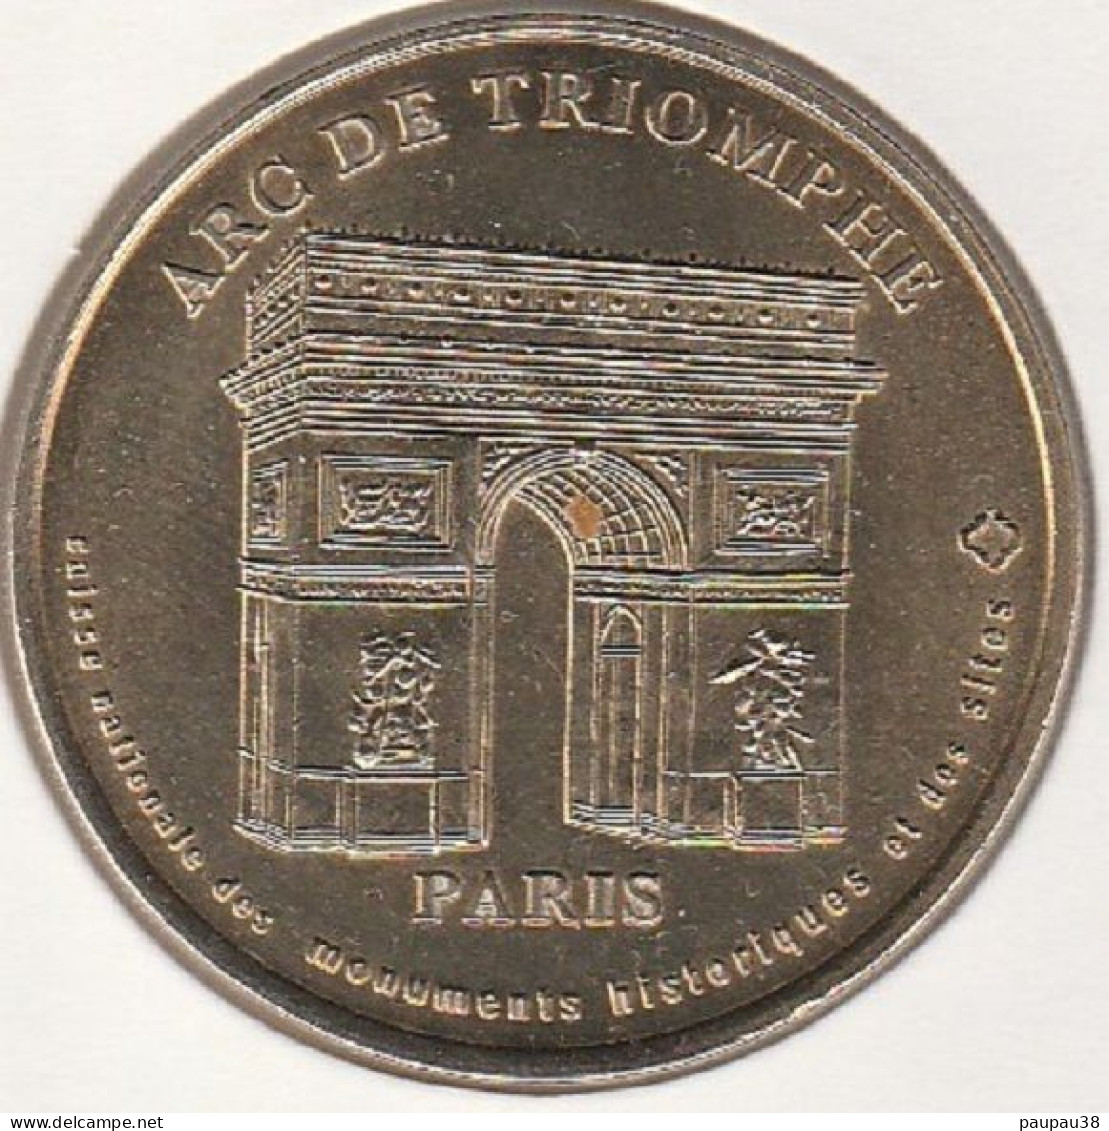 MONNAIE DE PARIS 2000 - 75 PARIS Arc De Triomphe - CNMHS - 2000